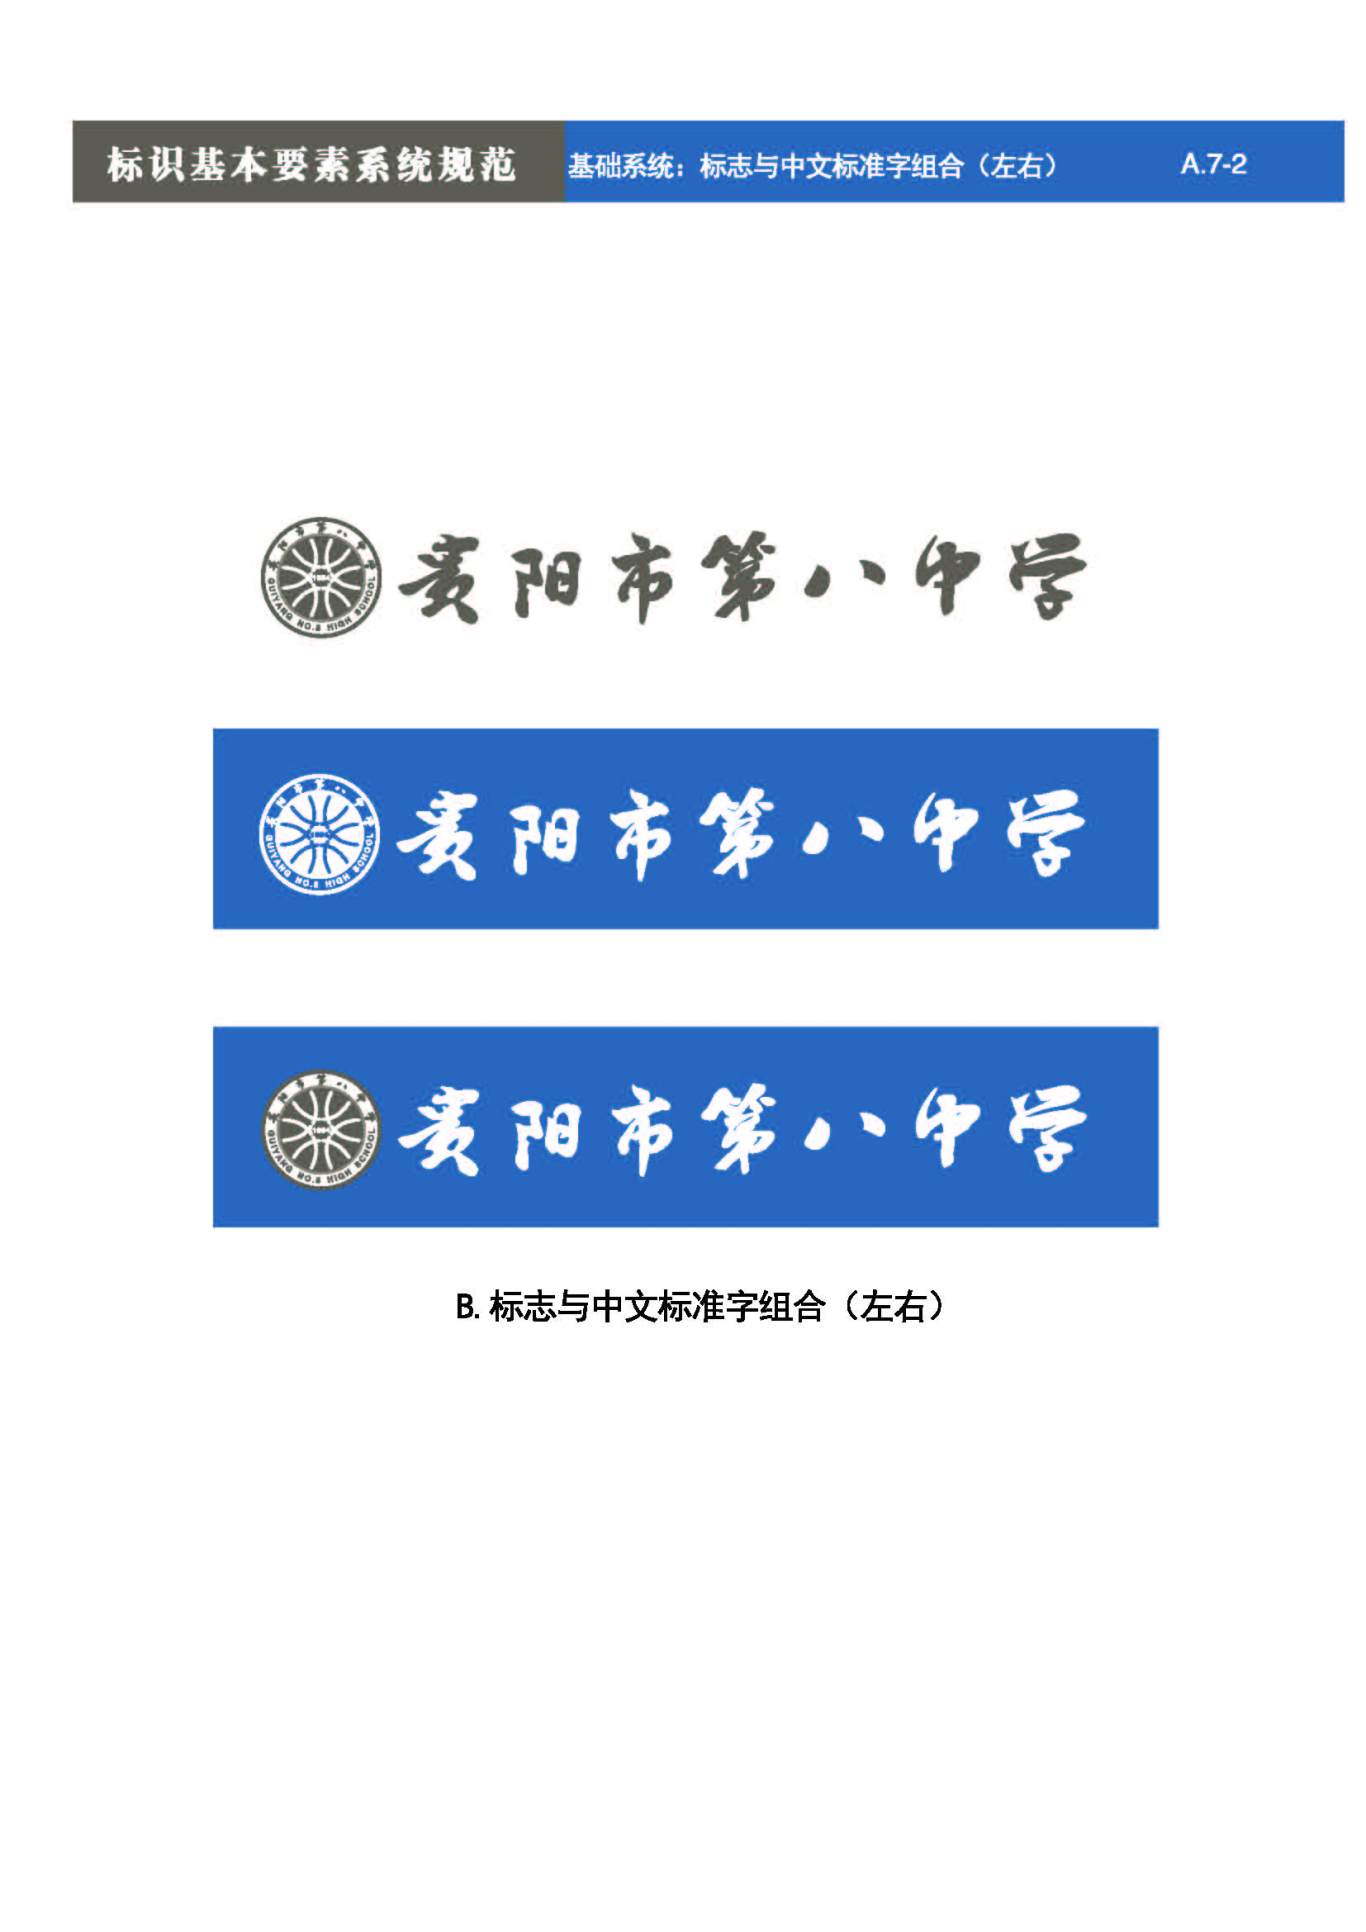 贵阳第八中学Logo、VIS设计图23